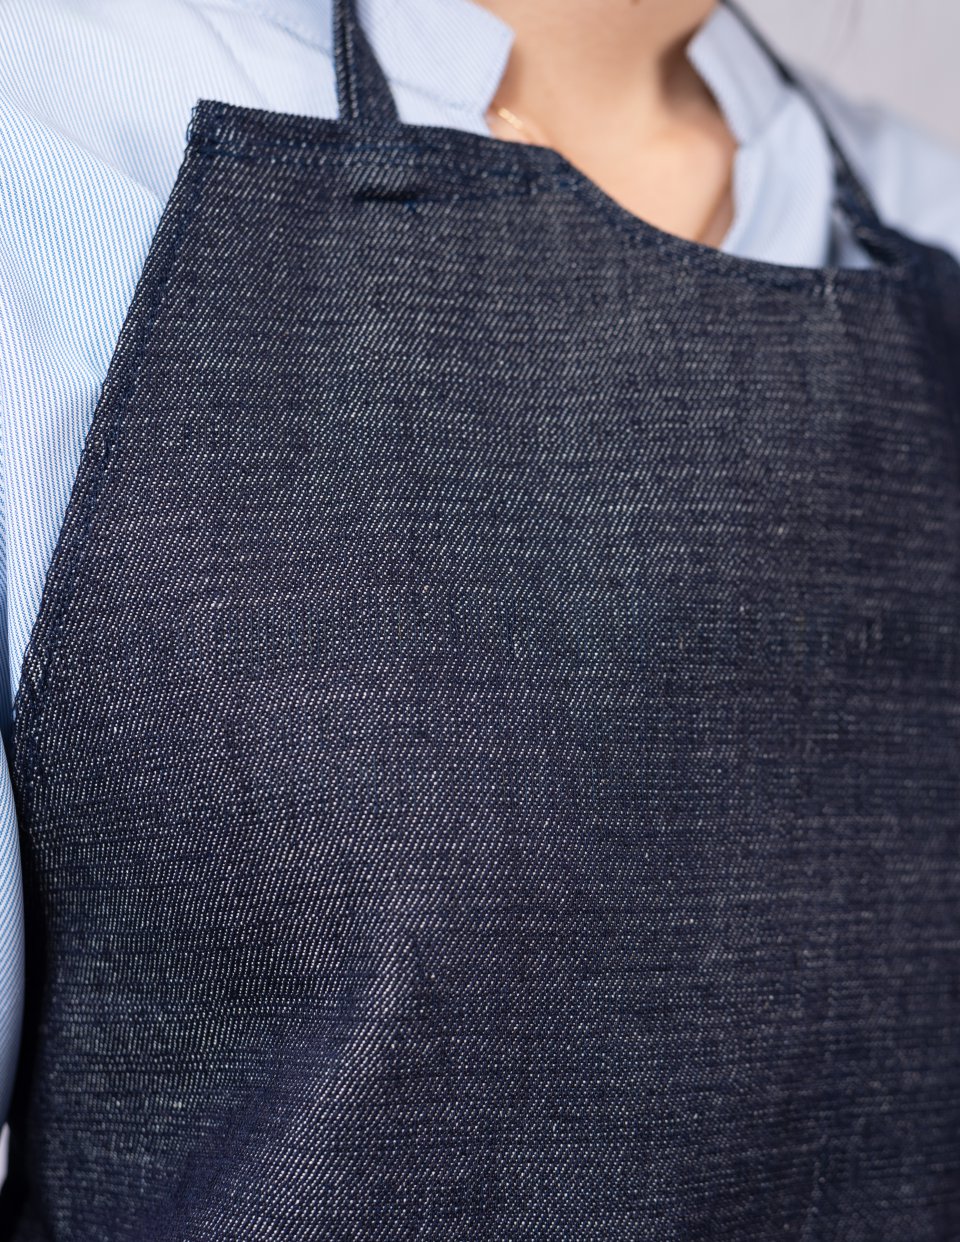 นลินสิริ 2015 รับผลิตผ้ากันเปื้อนผ้ายีนส์สำหรับพนักงานโรงงาน ผ้ากันเปื้อนทุกชนิดรูปที่ 